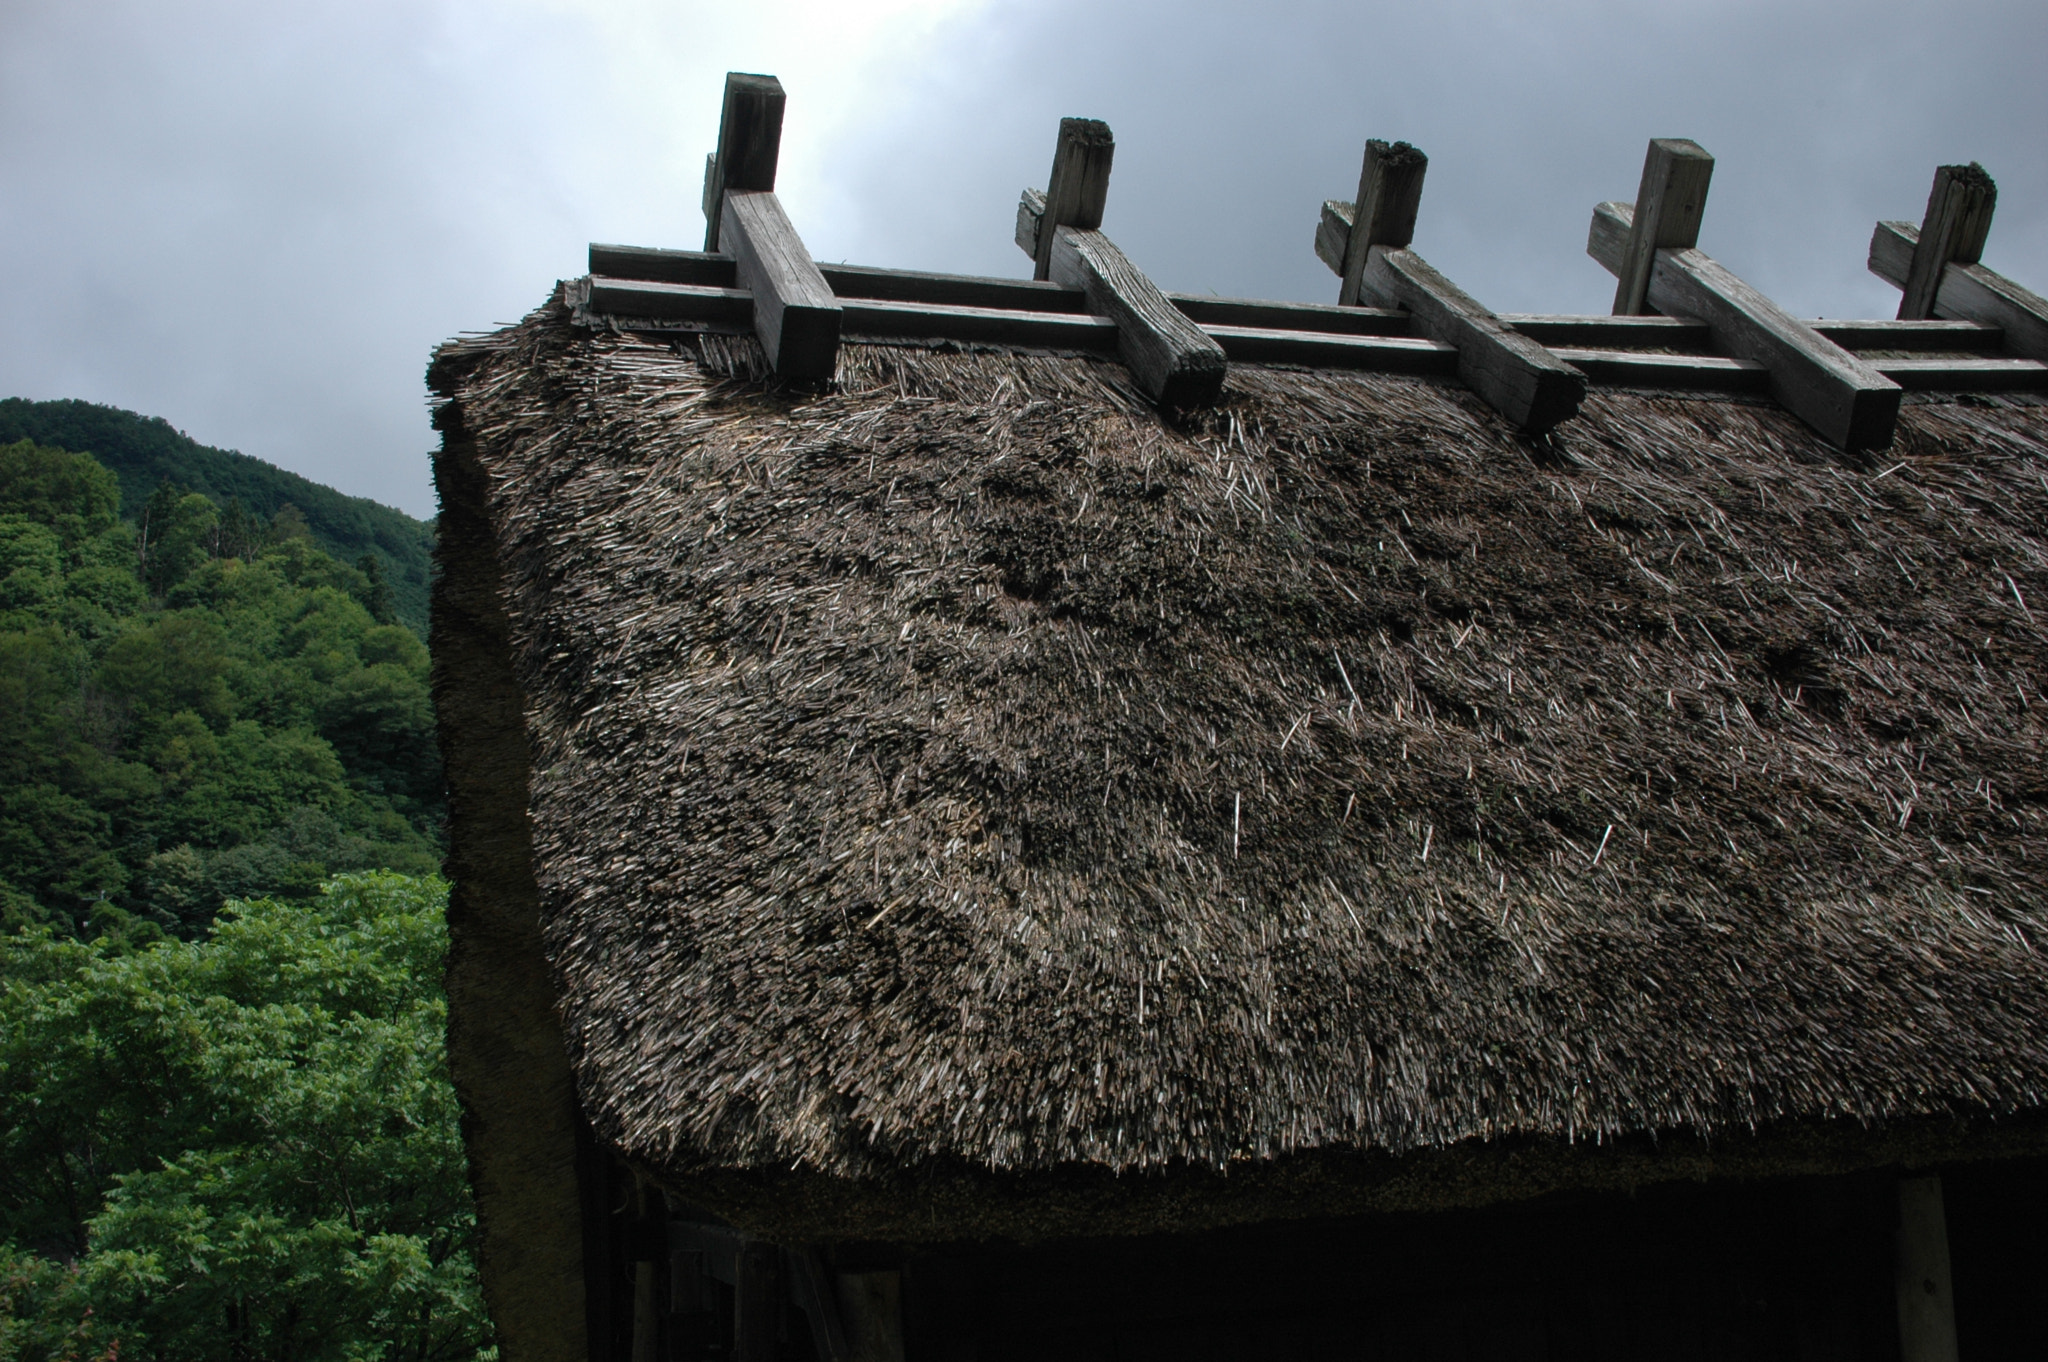 Nikon D70 sample photo. Thatched roof--at tsuruoka photography